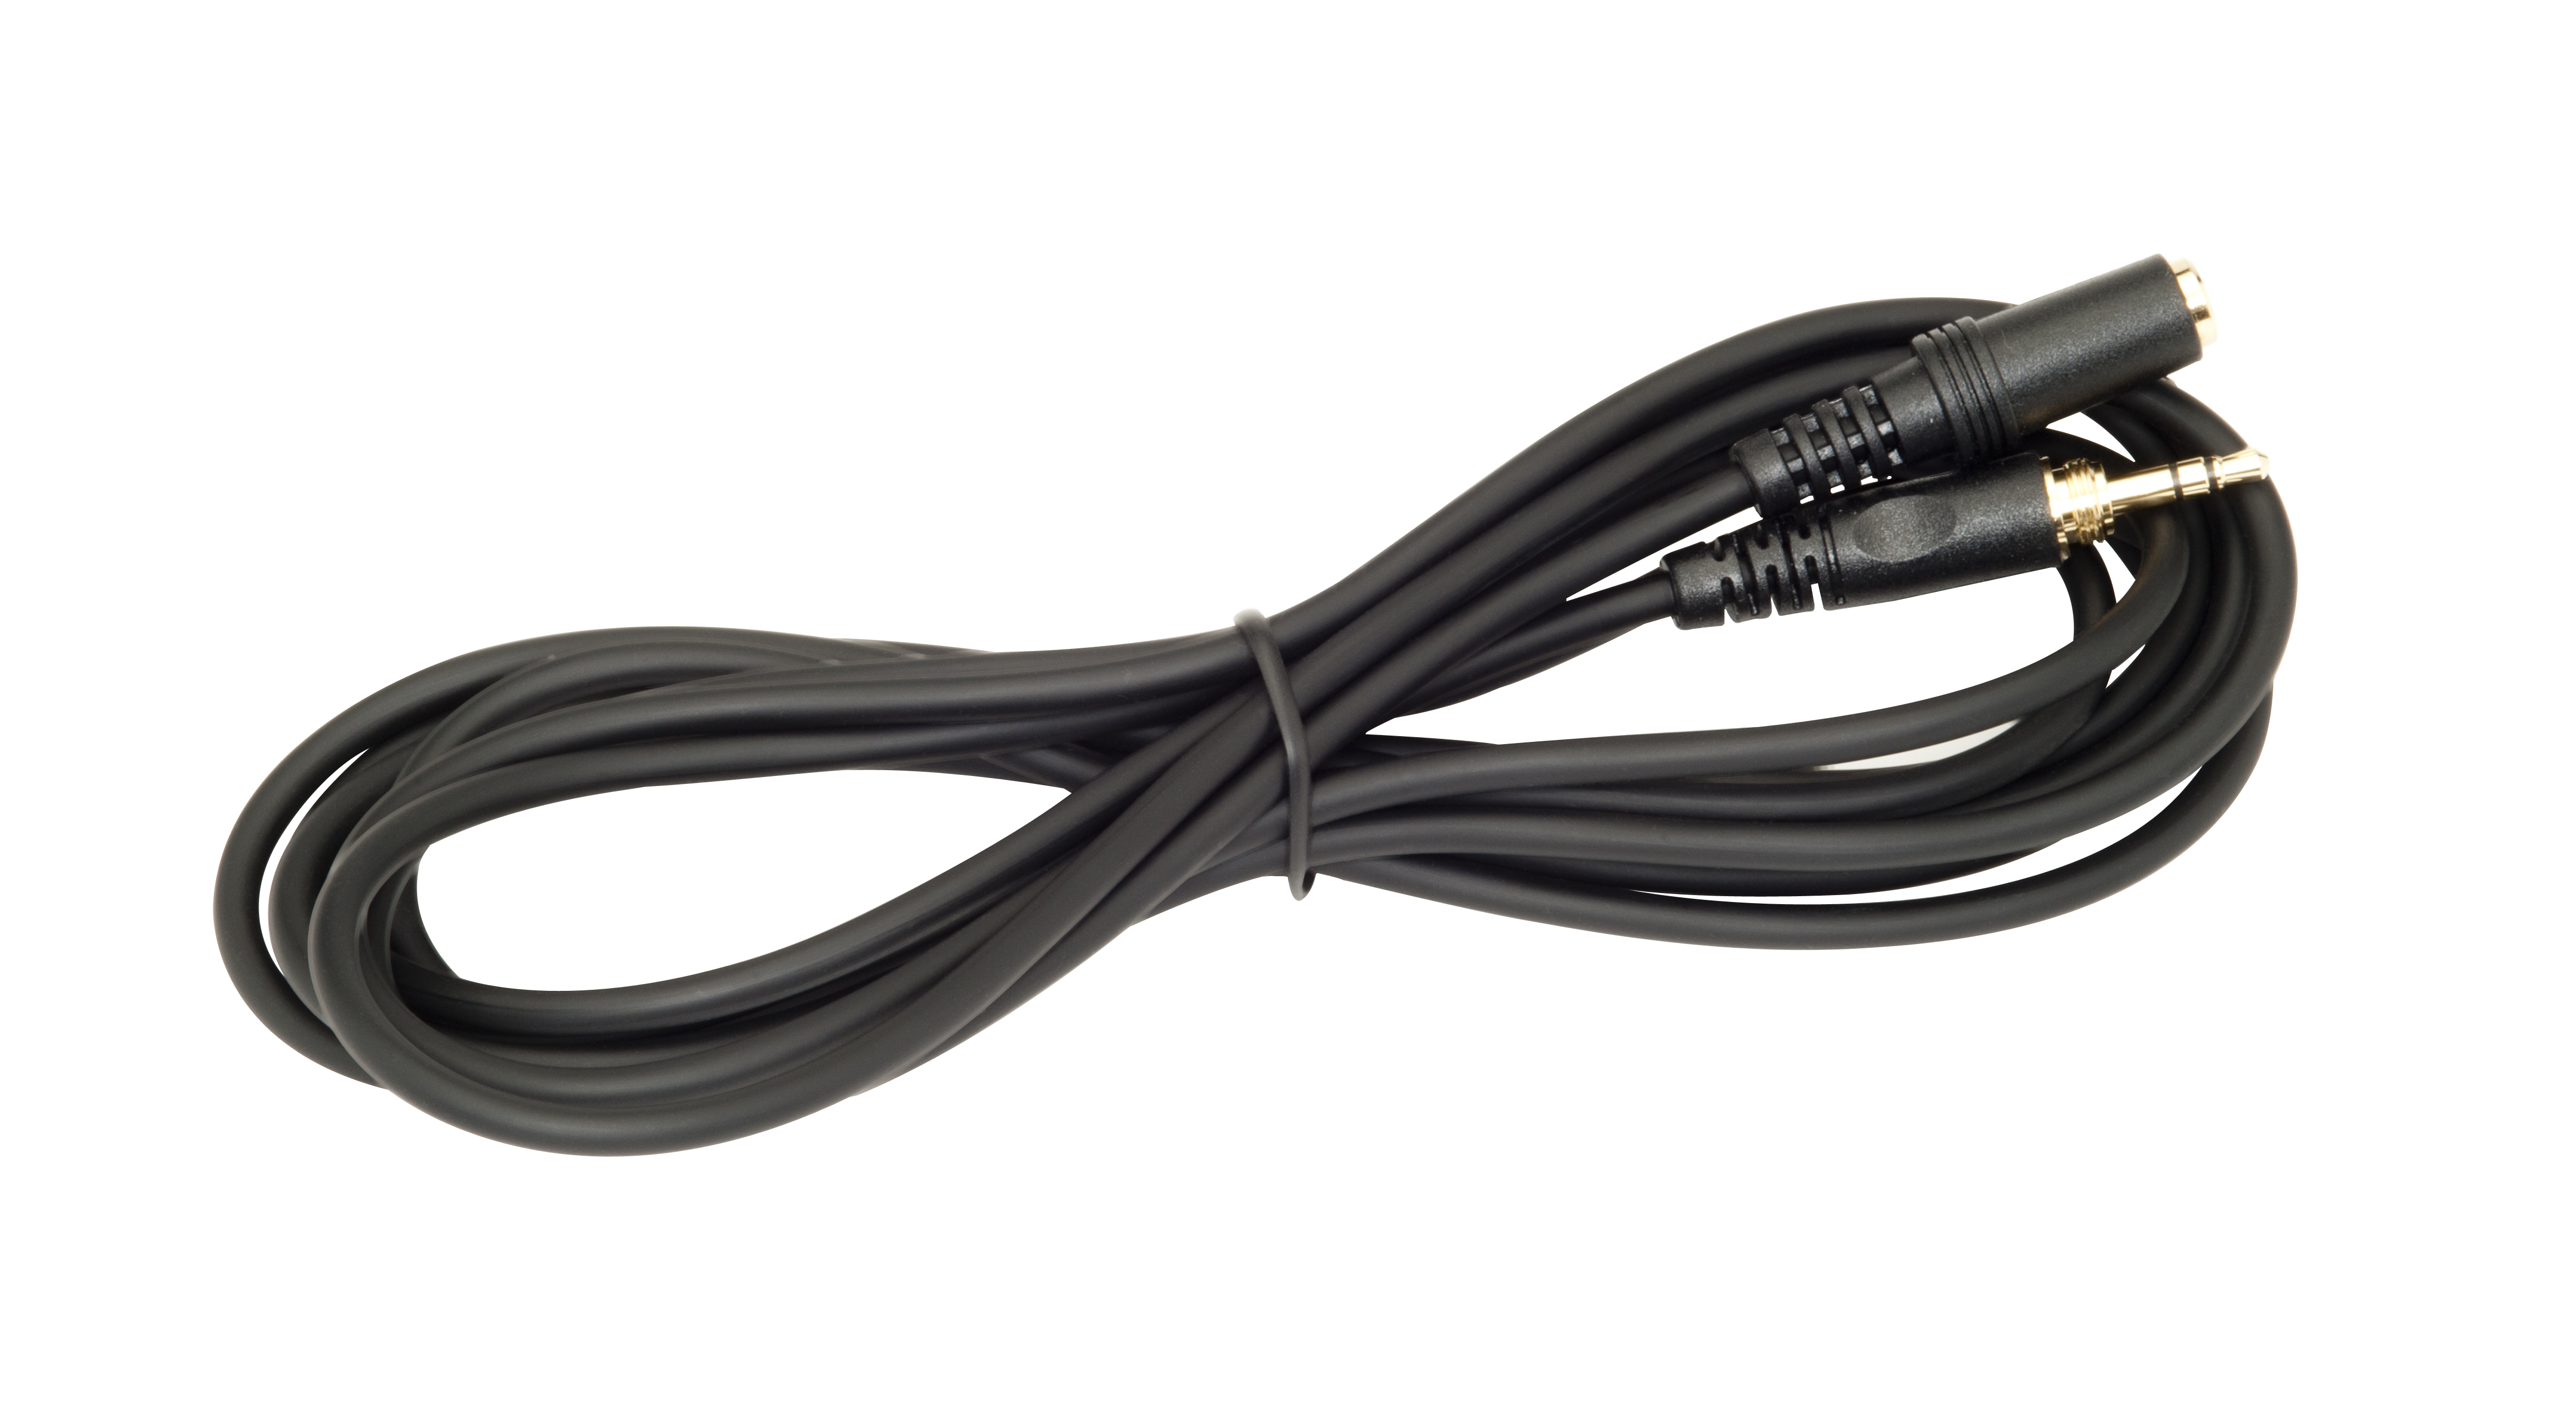 KRK KRK Headphone Extension Cable (1/8 in. Female to 1/8 in. Male) (3 Meter)